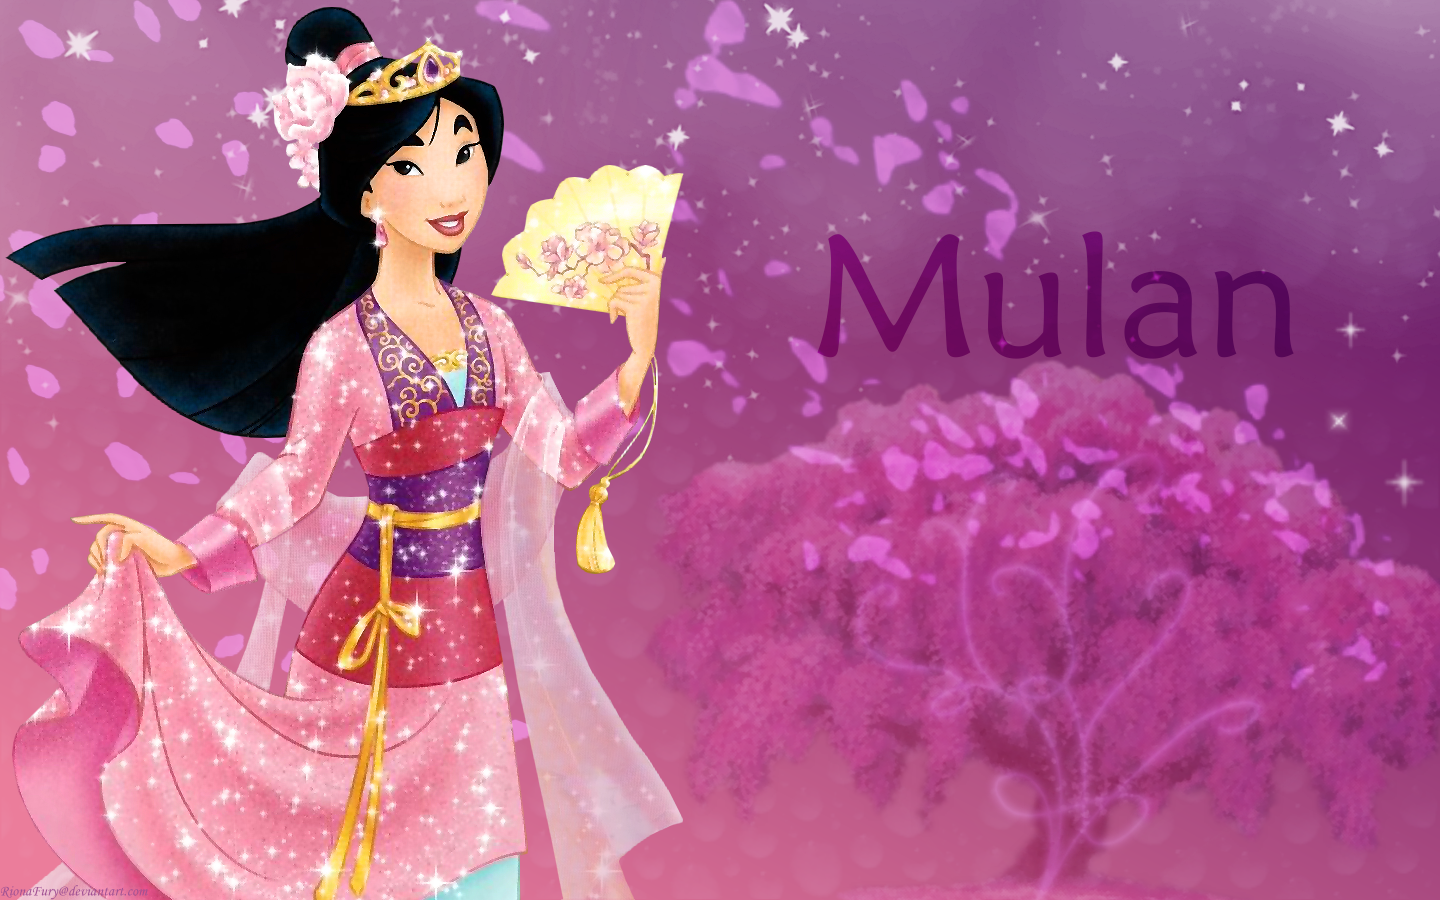 Free Download Mulan Disney Princess Mulan Wallpaper 33894127